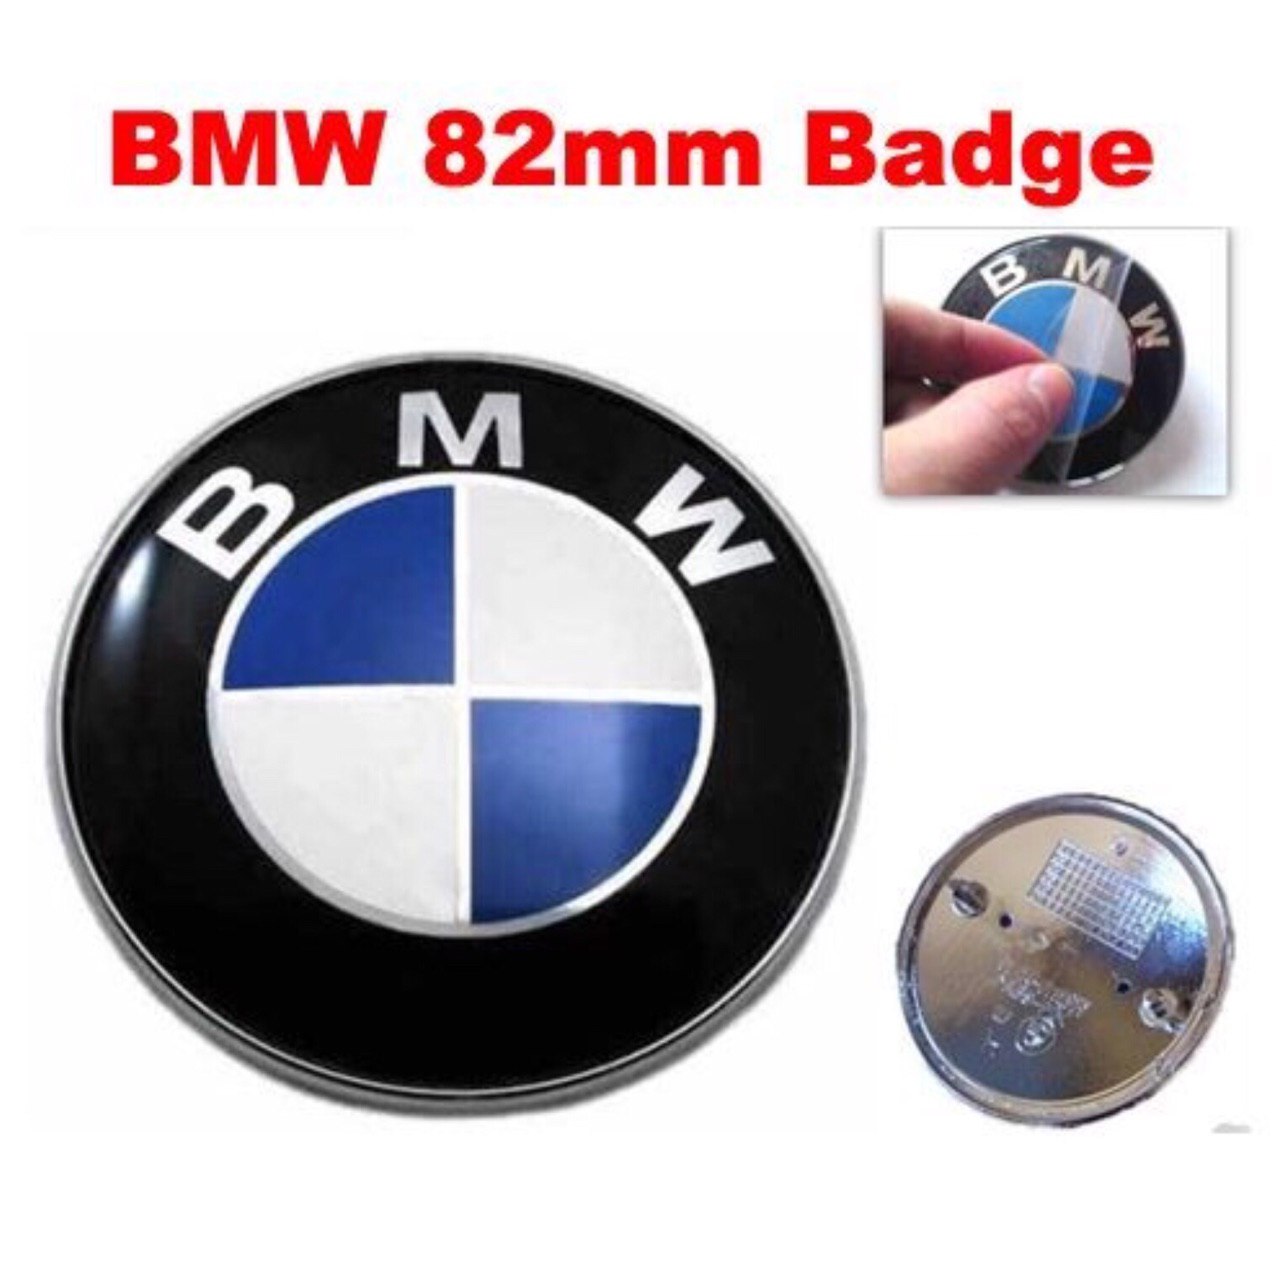 BMW Badge 82mm Bonnet Hood Emblem for E46 E39 E38 E90 E60 Z3 Z4 X3 X5 X6